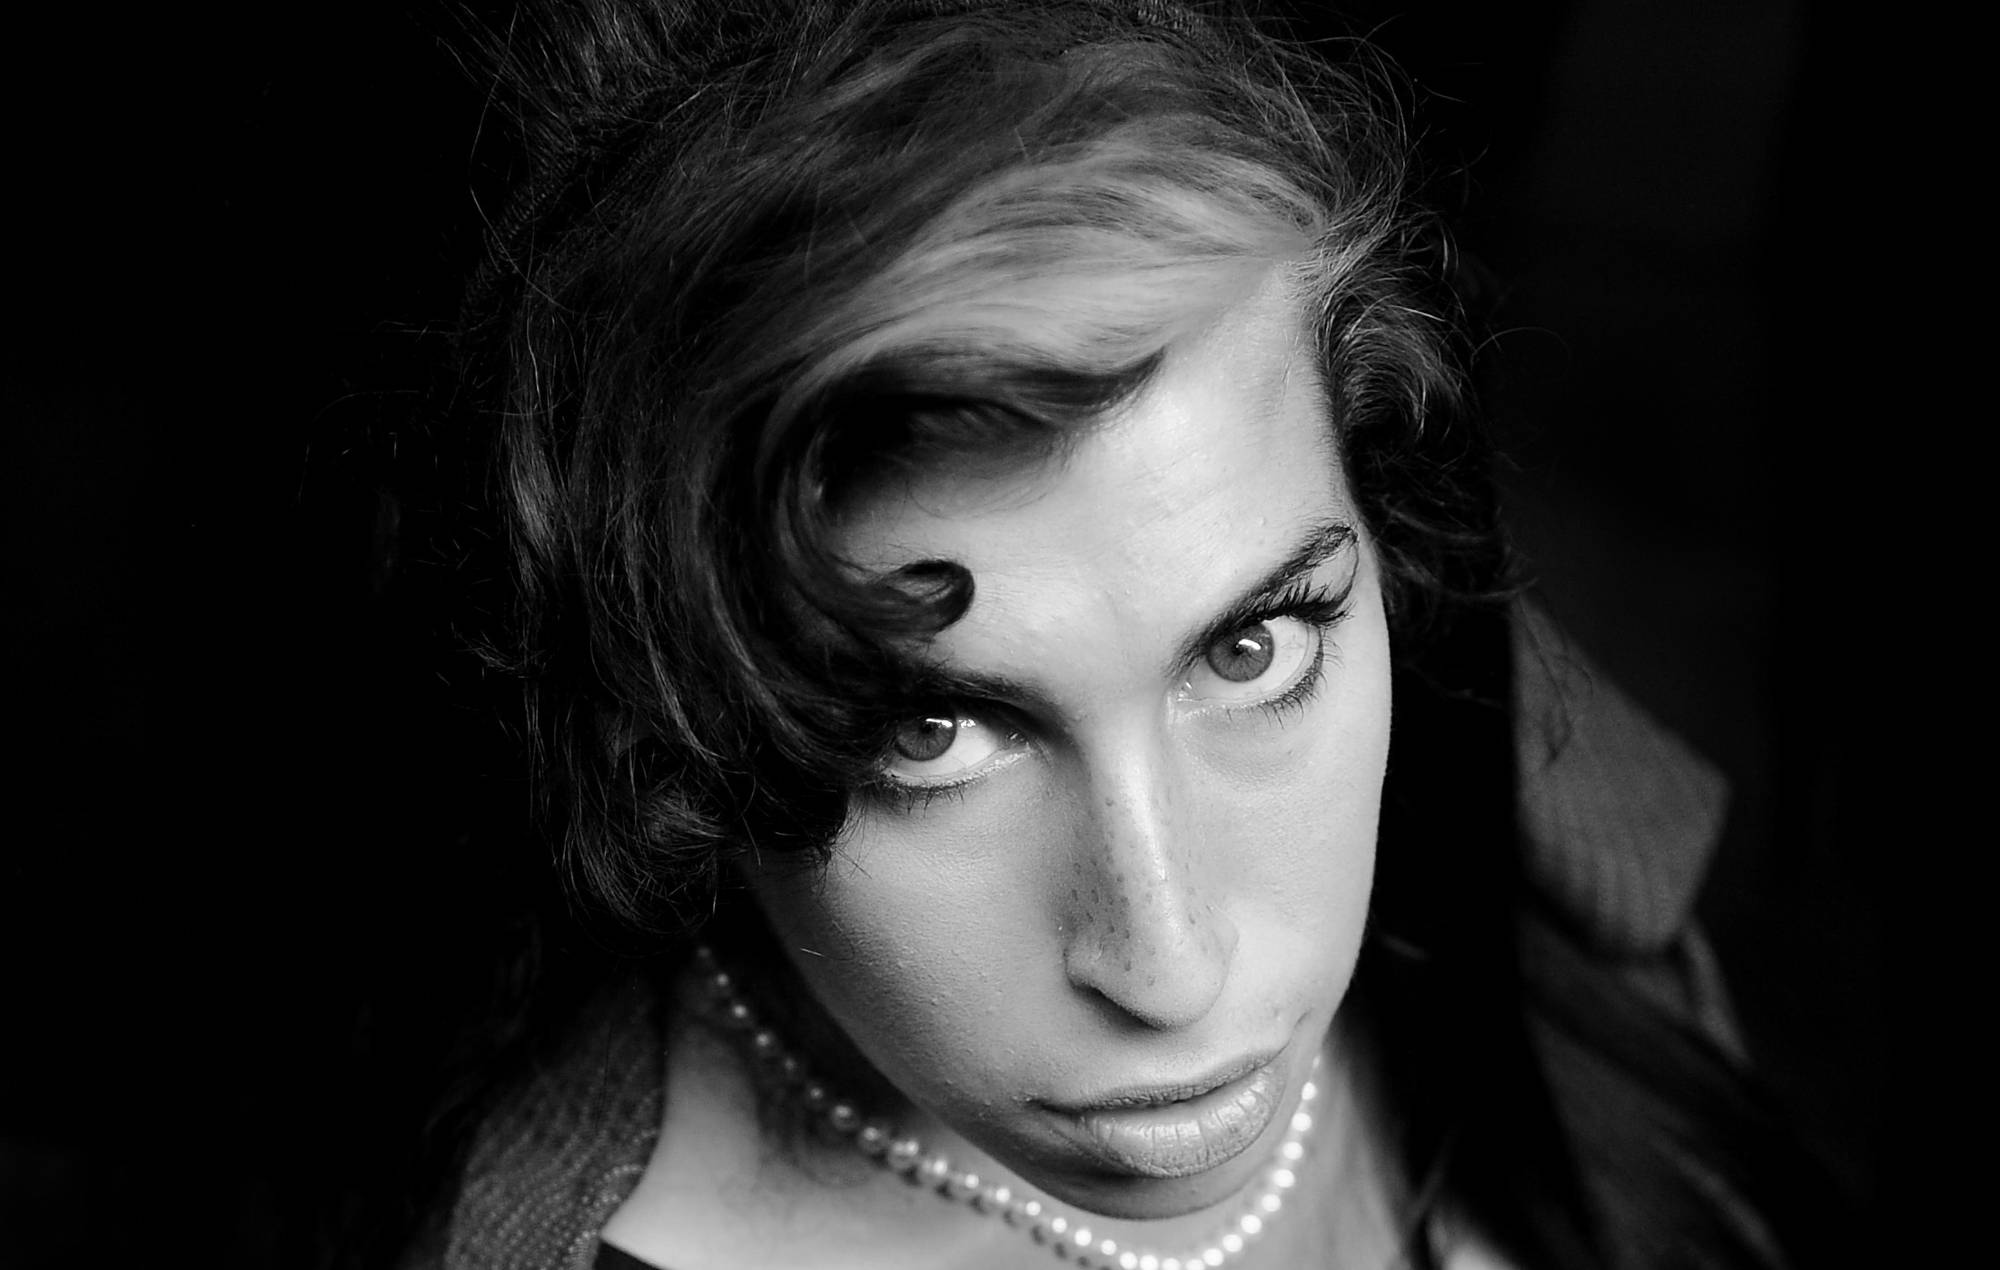 El biopic de Amy Winehouse seguirá adelante con su nueva directora, Sam Taylor-Johnson